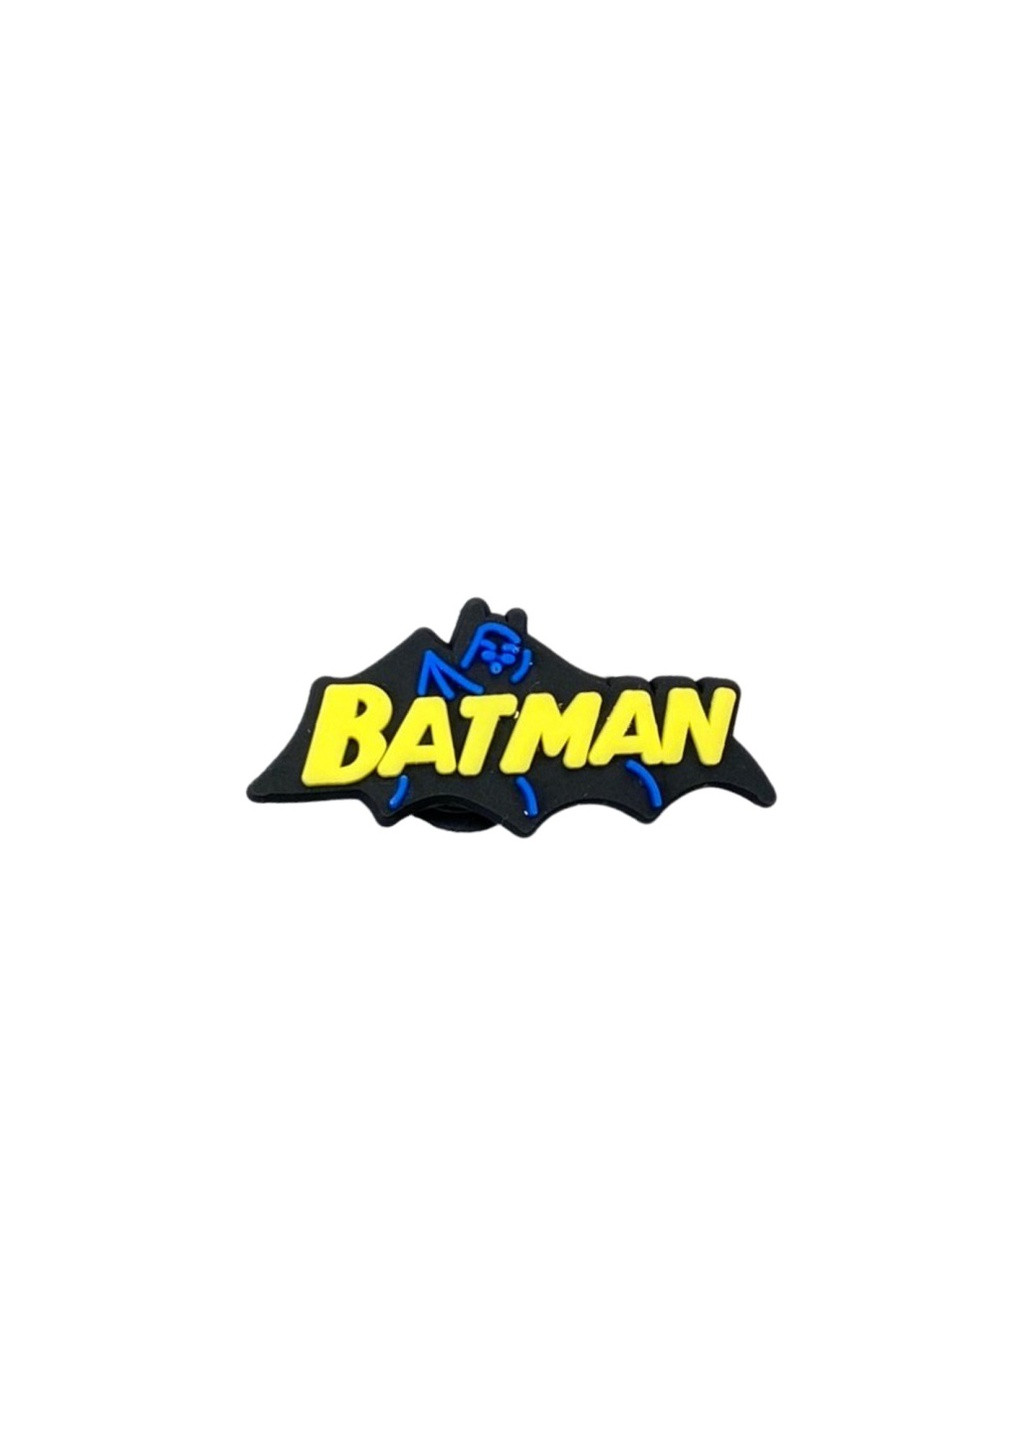 Джибітси для Бетмен напис Crocs jibbitz (253326780)